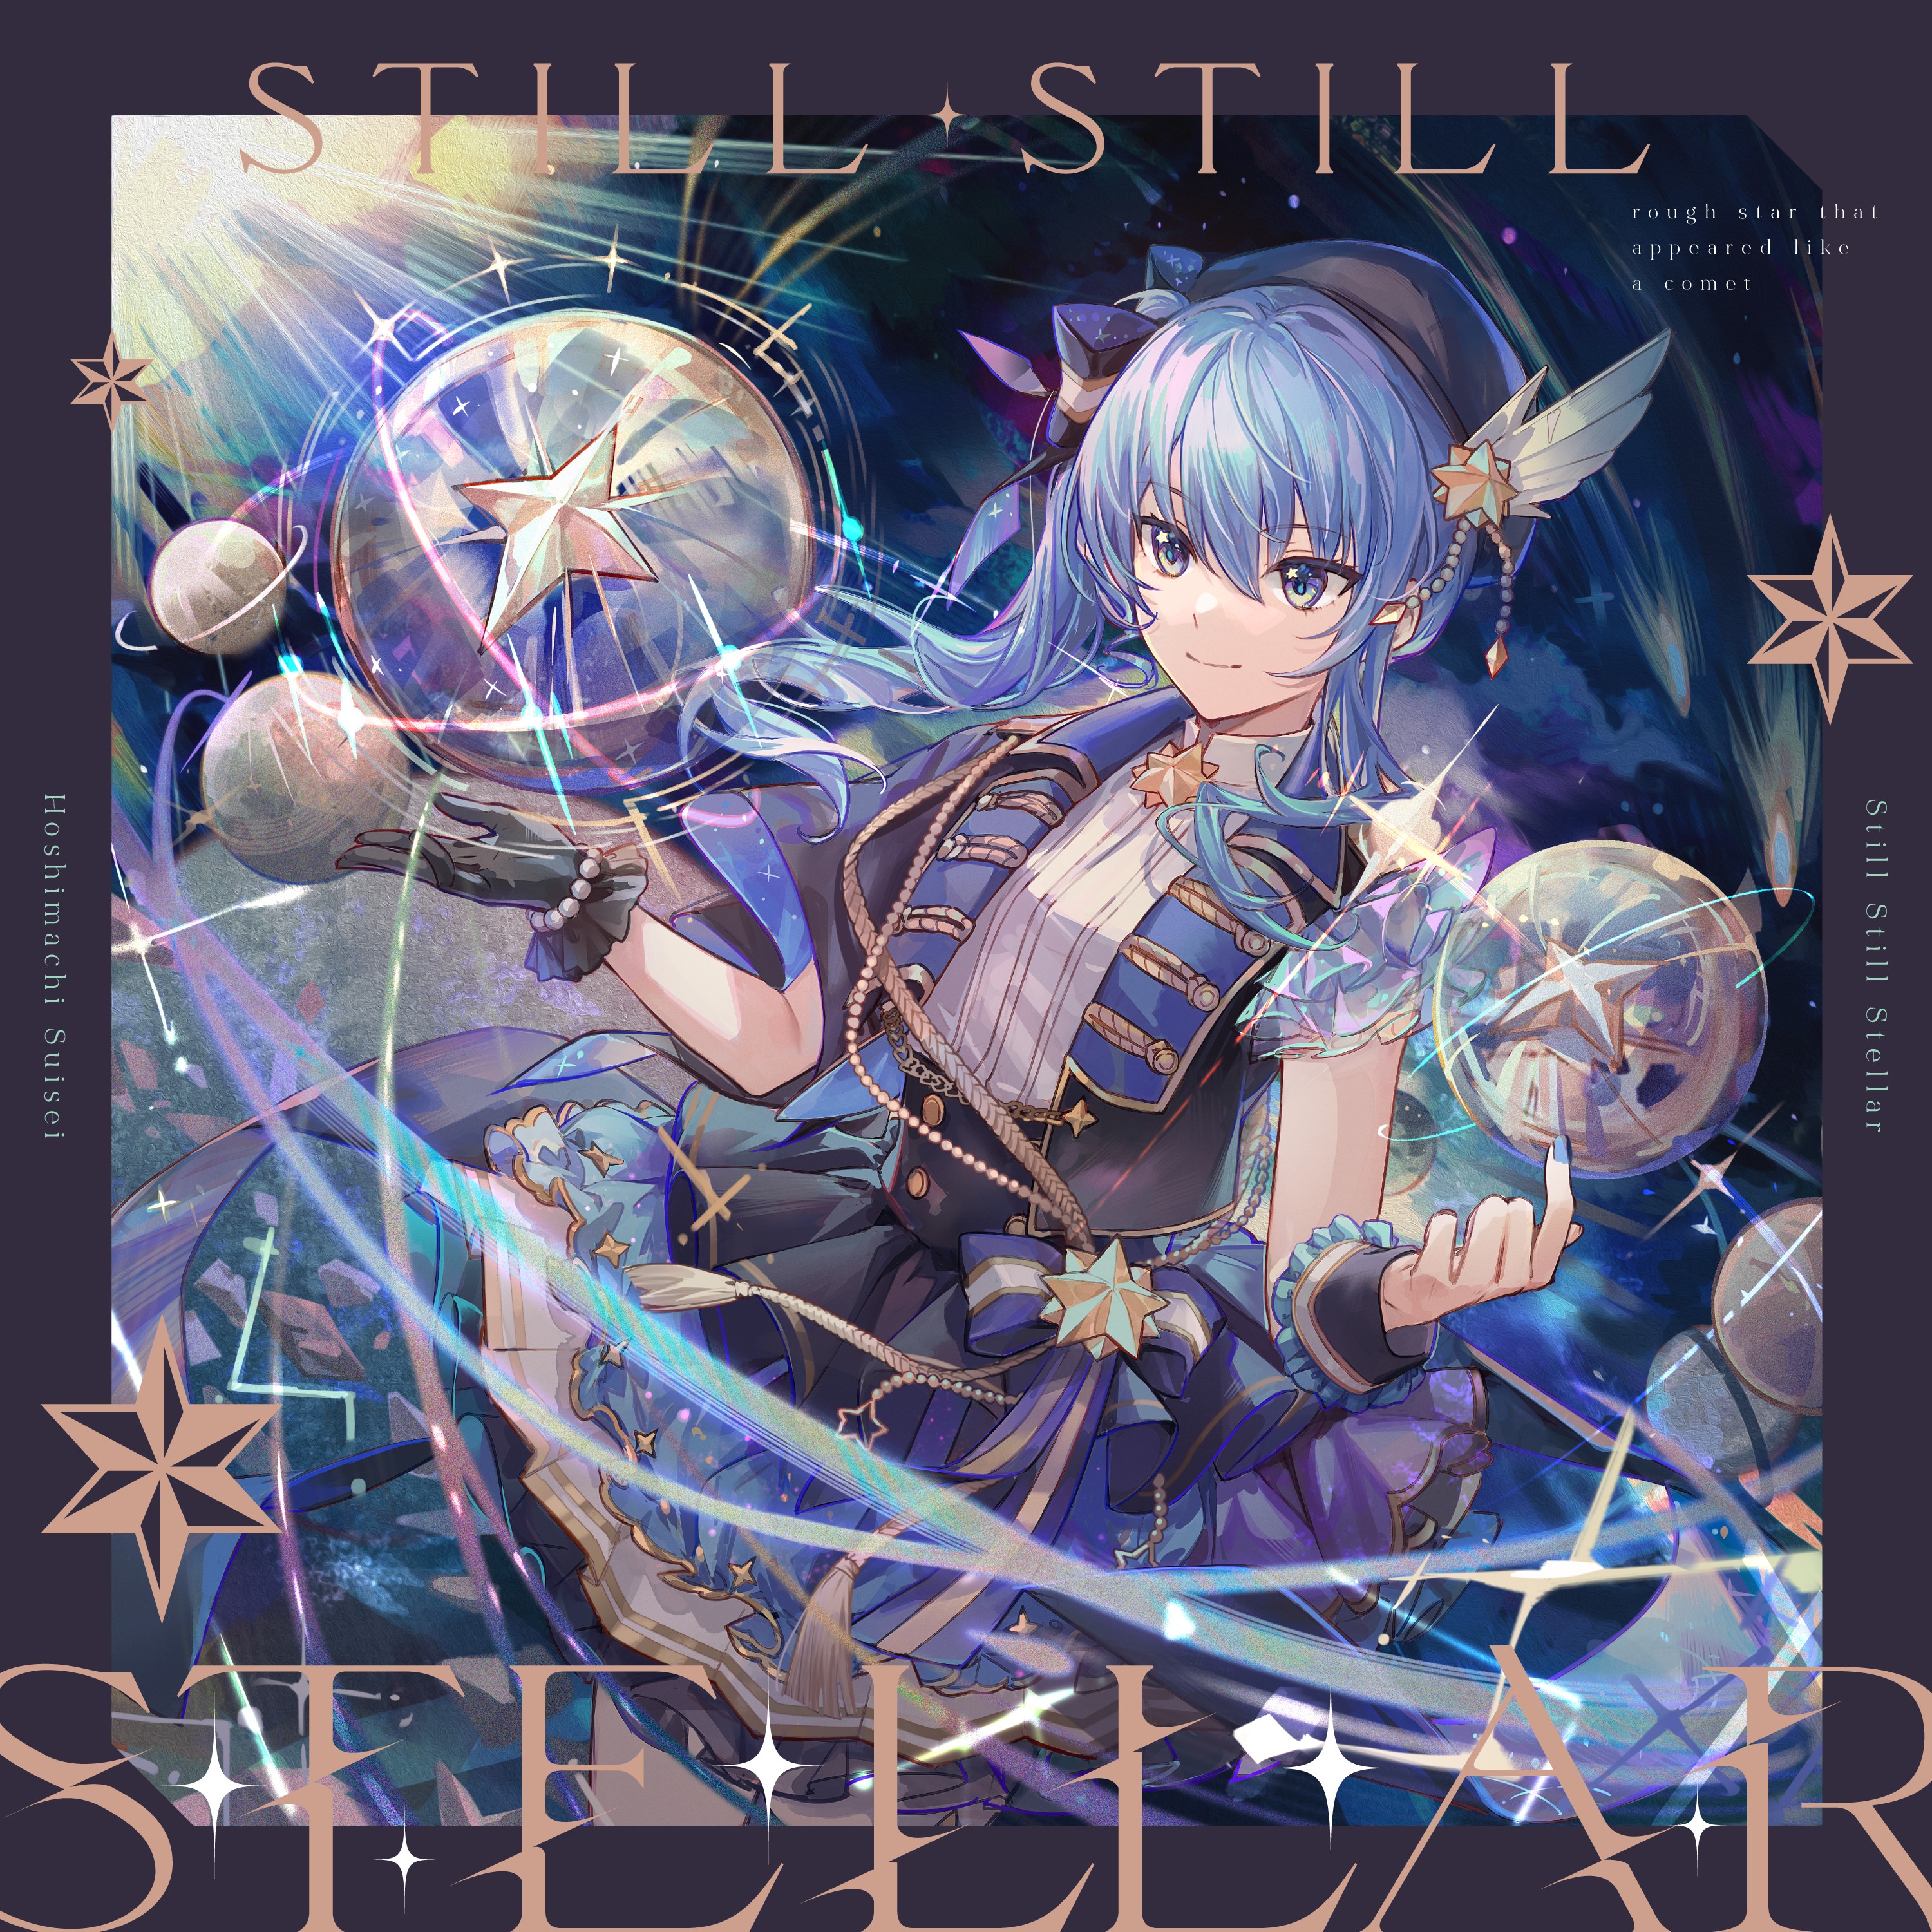 星街すいせい (Hoshimachi Suisei) – Still Still Stellar [FLAC / WEB] [2021.09.29]